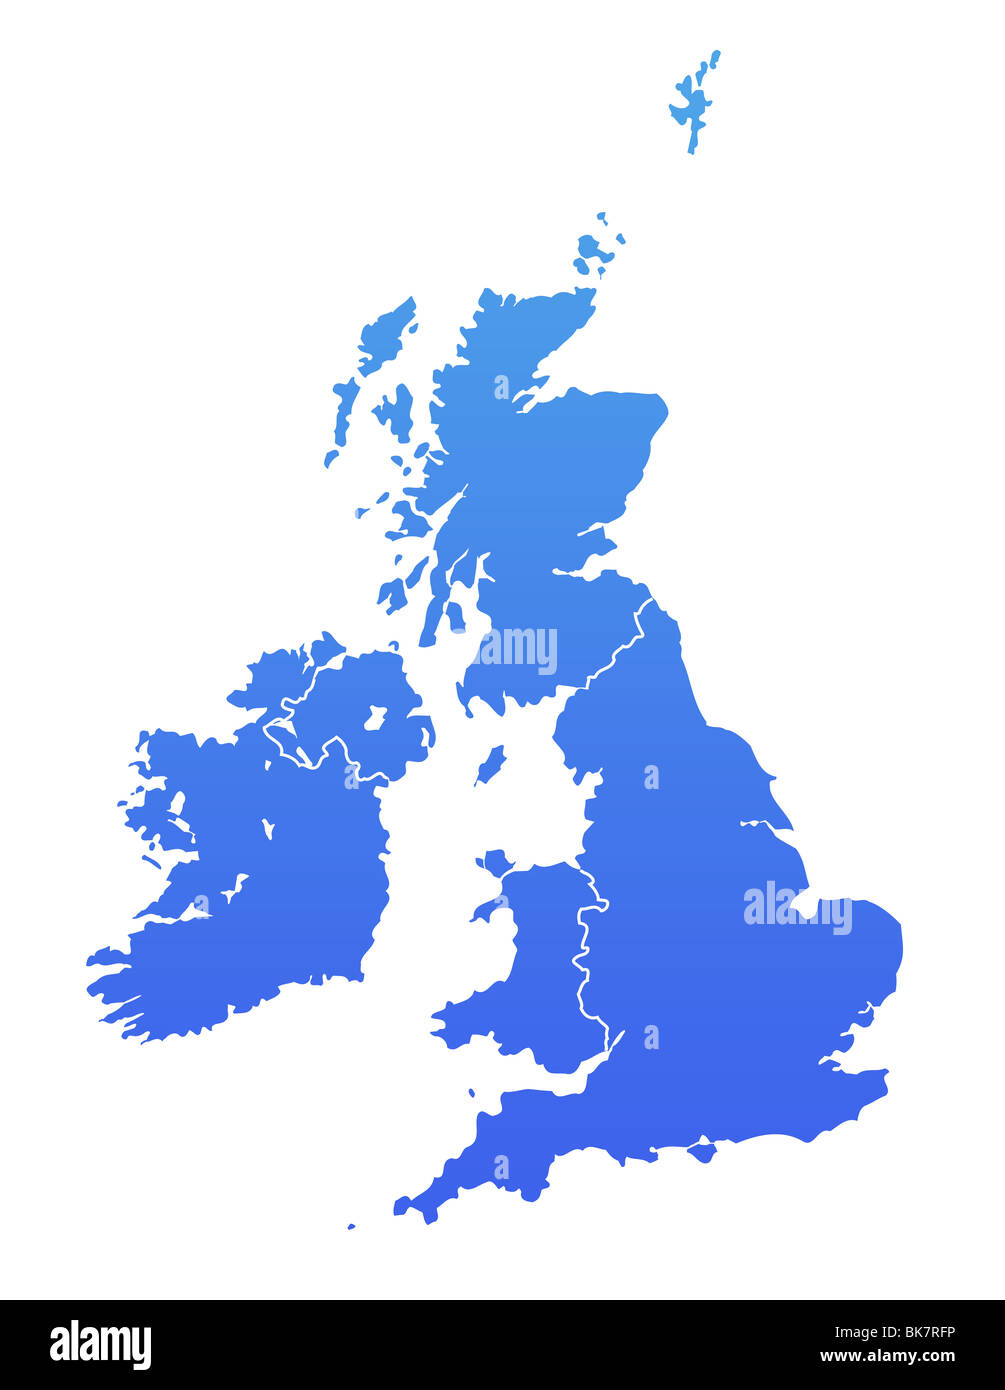 Vereinigtes Königreich-Karte im Farbverlauf blau, isoliert auf weißem Hintergrund. Stockfoto